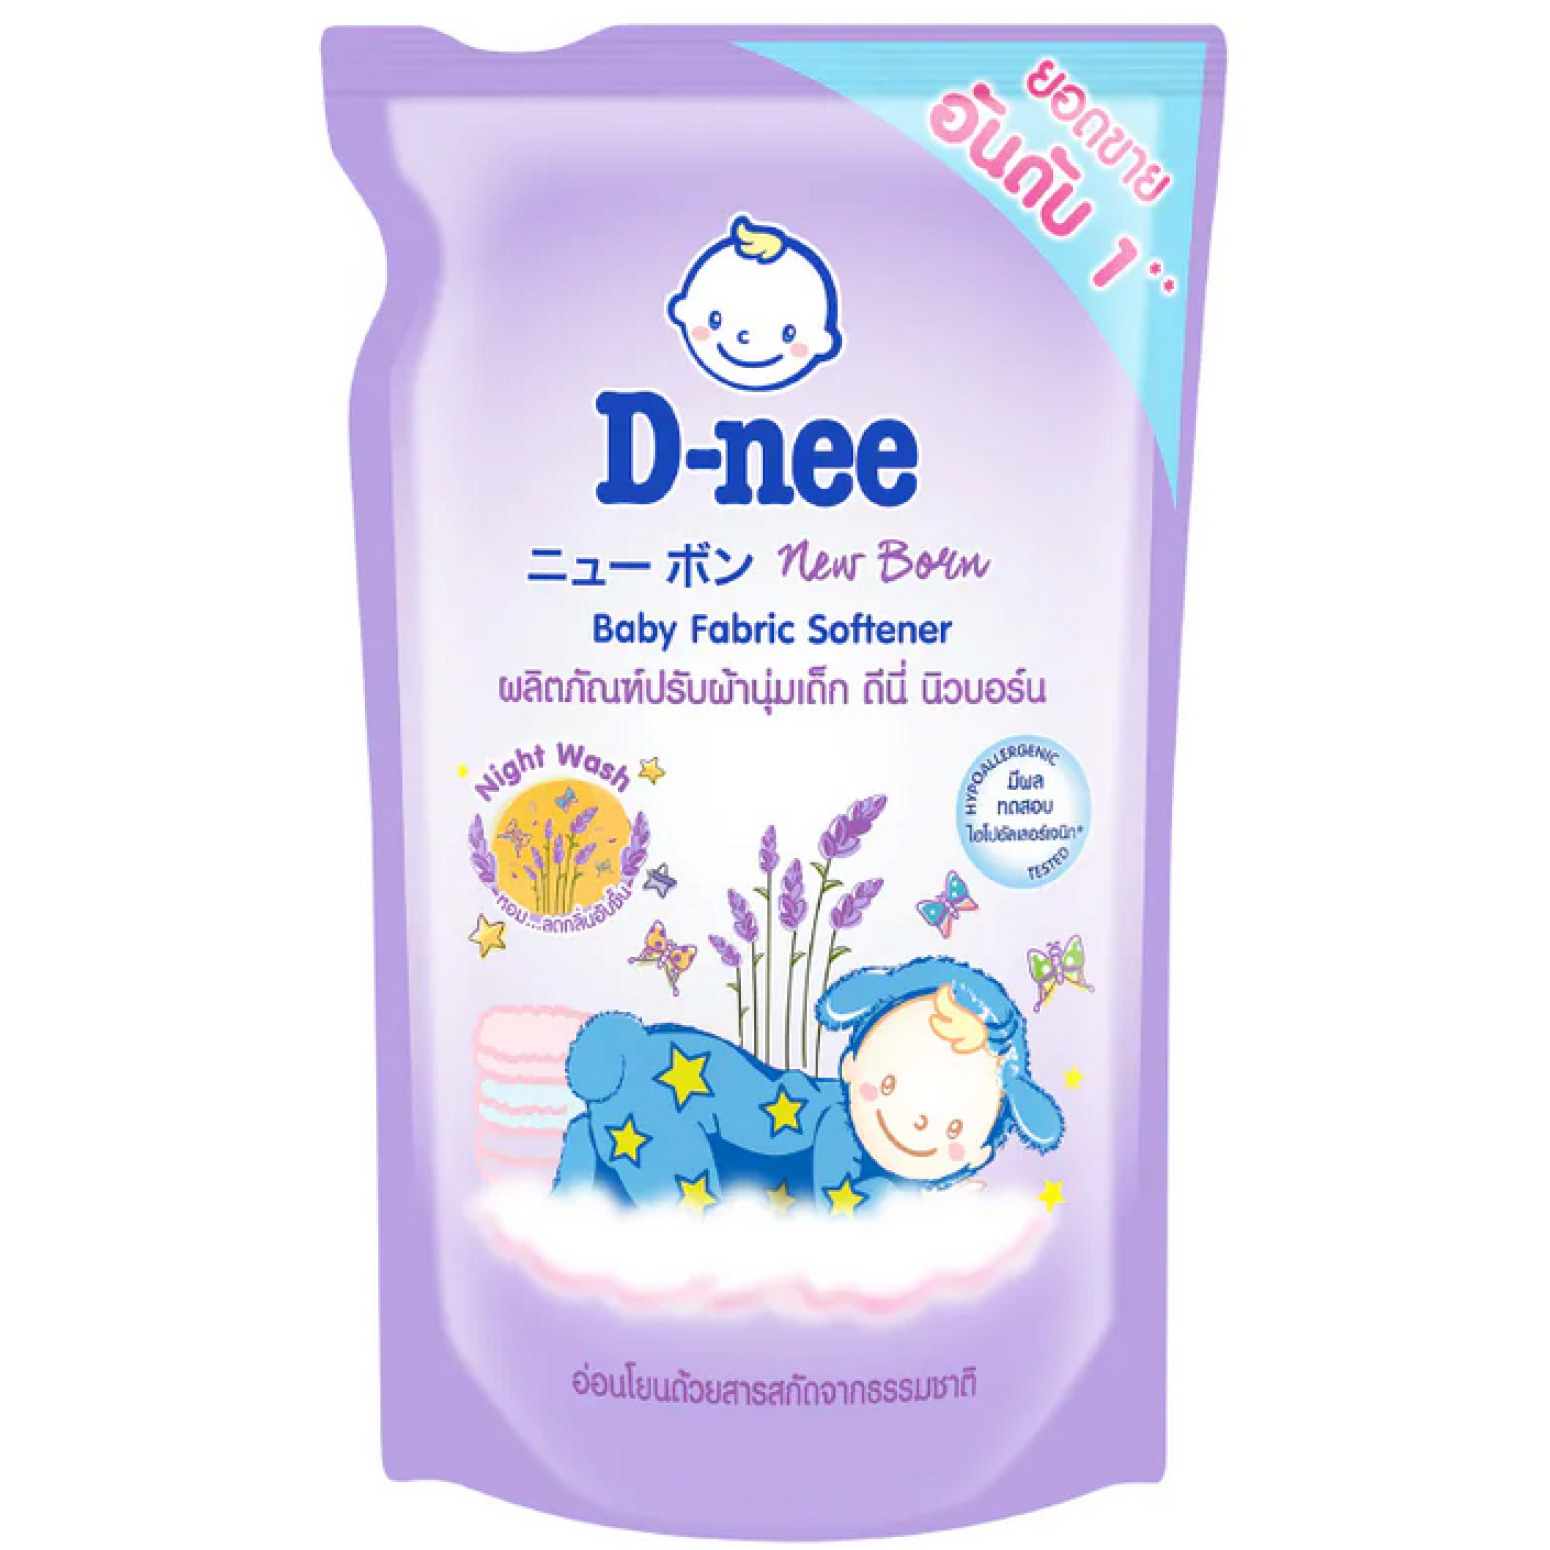 D-nee Baby Fabric Softener Night Wash